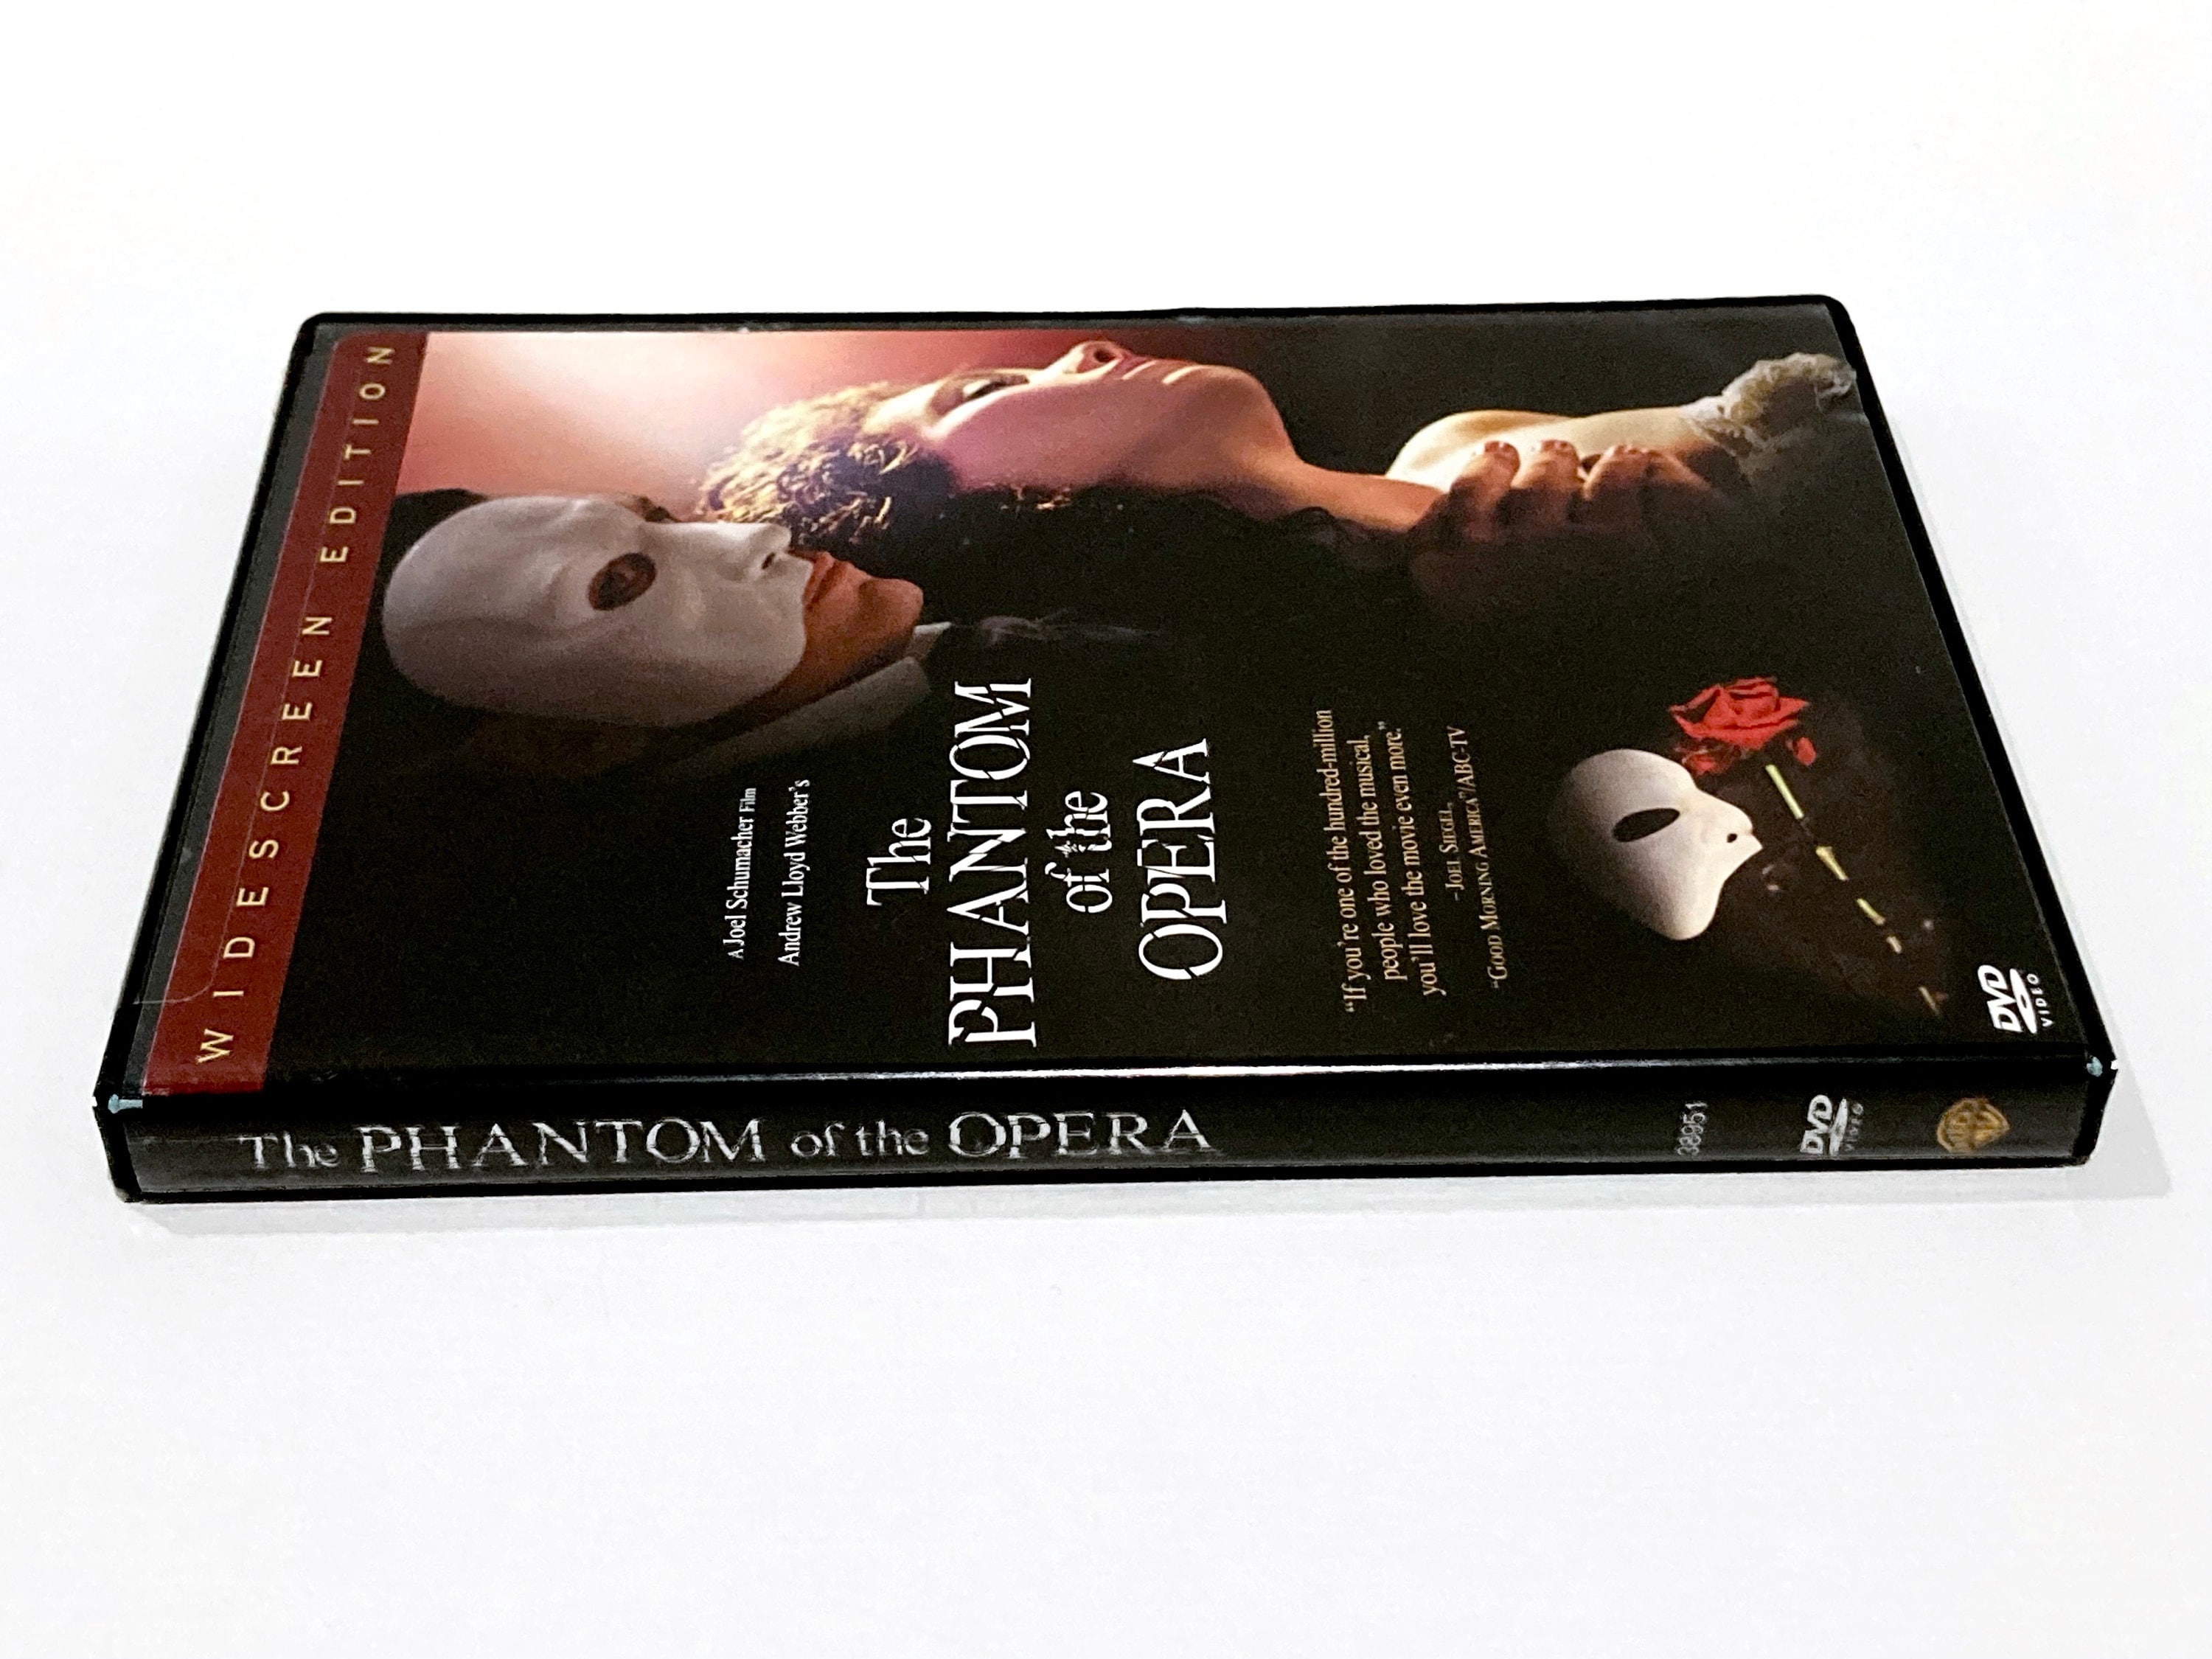  The Phantom of the Opera [DVD] [2004] : Movies & TV